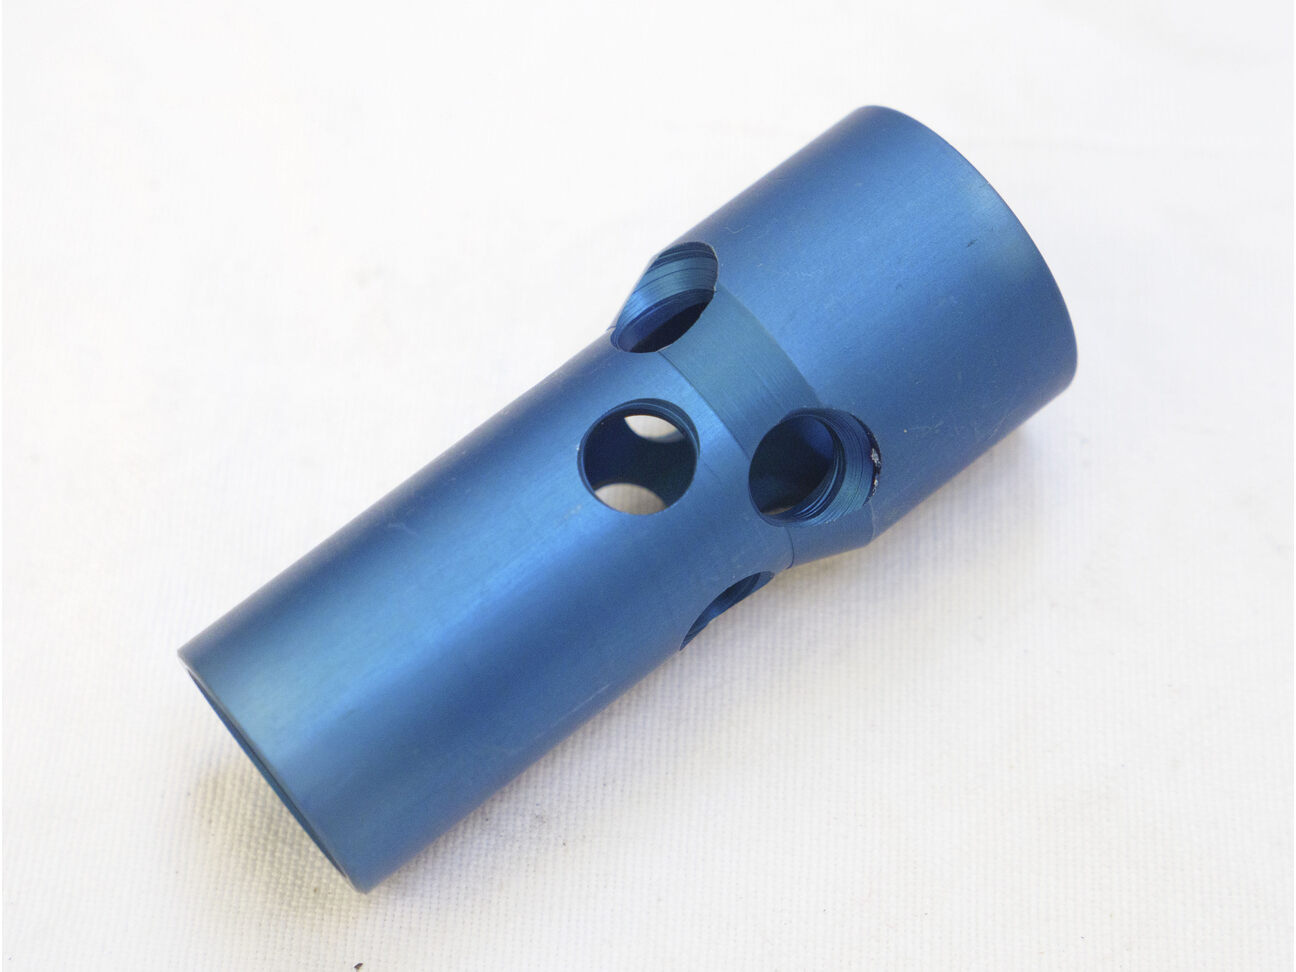 Light Blue 1 inch Muzzle Break, Taso or Palmers style.